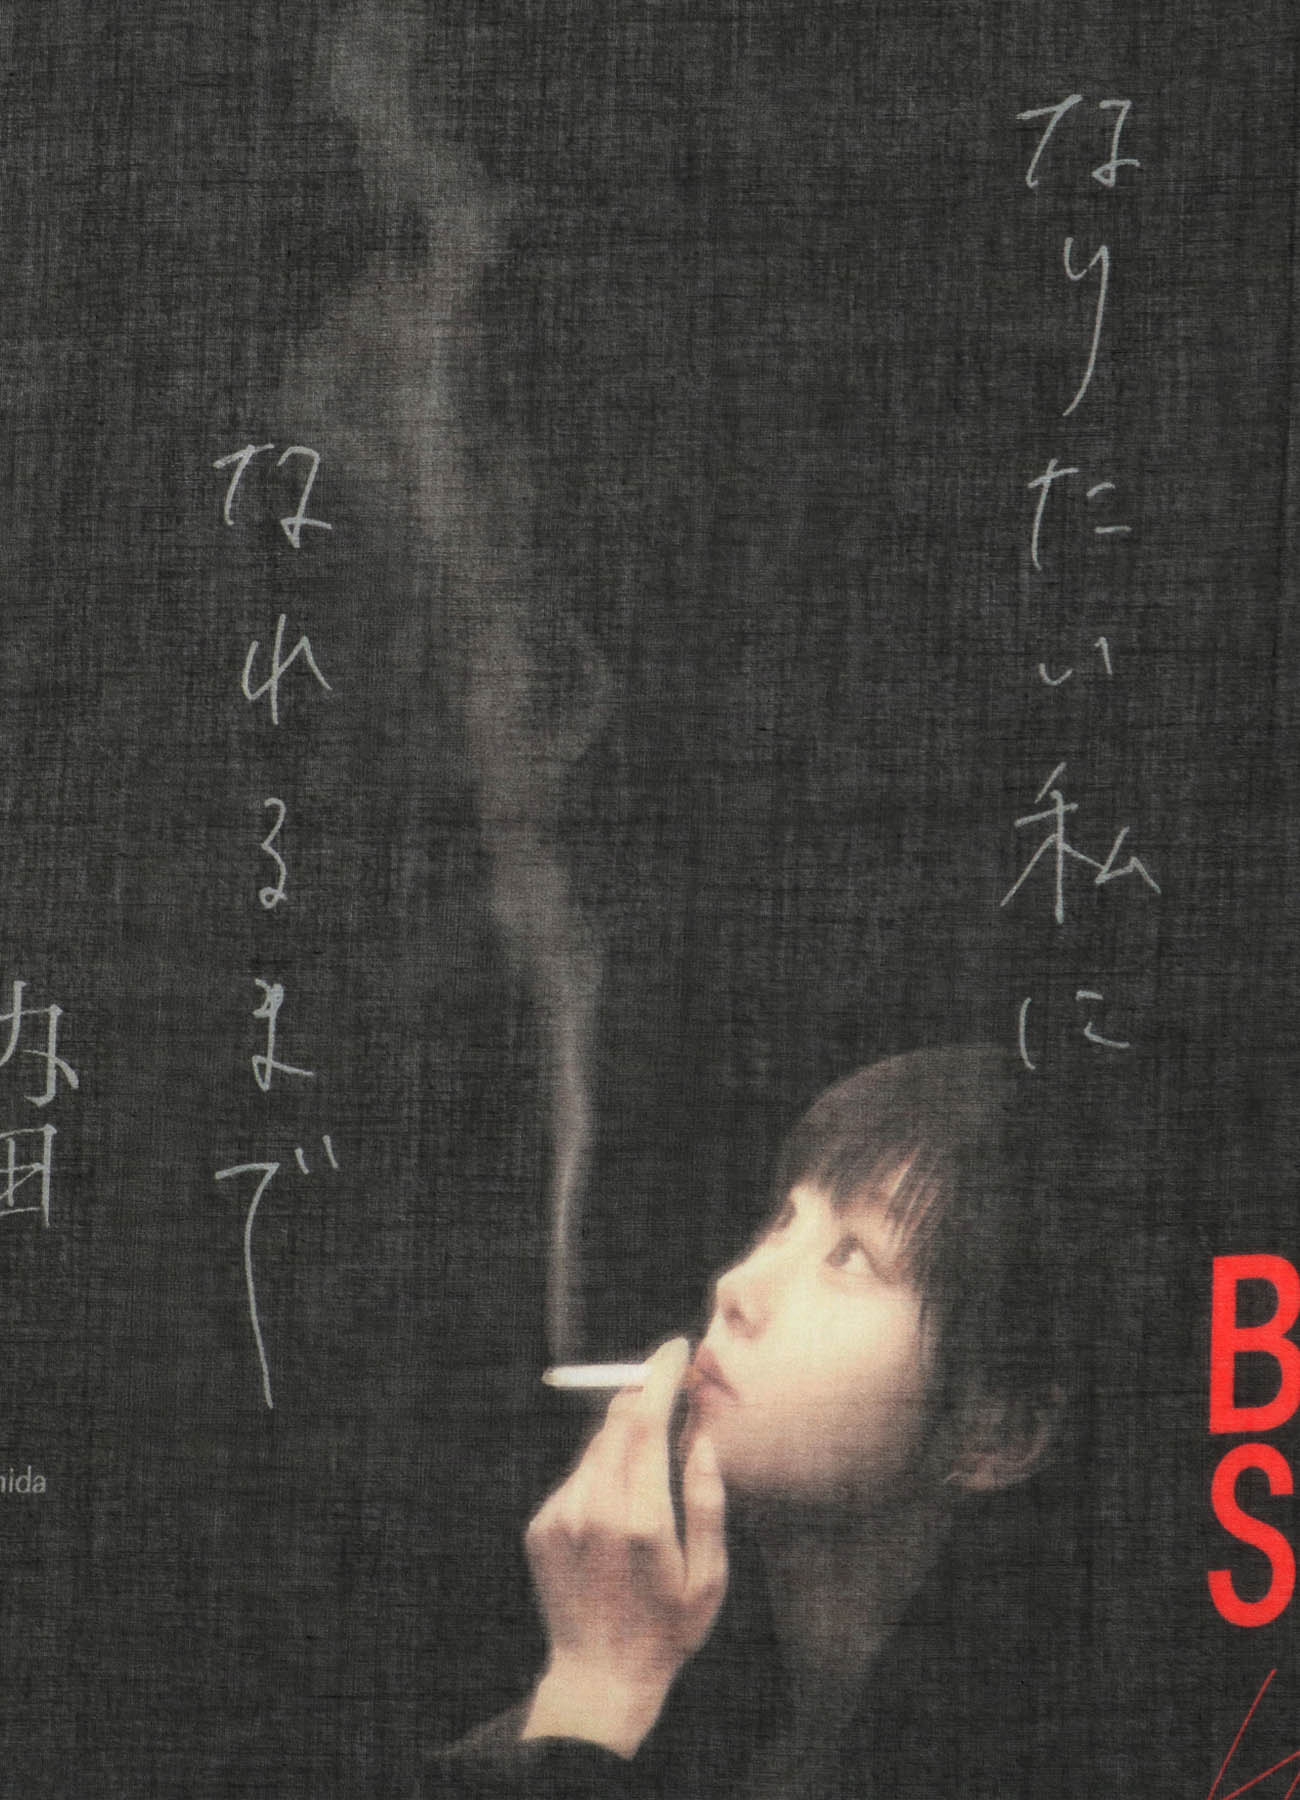 BE@RBRICK BLACK Scandal Yohji Yamamoto × 内田すずめ × S.H.I.P&crew なりたい私になれるまで HANDKERCHIEF.2